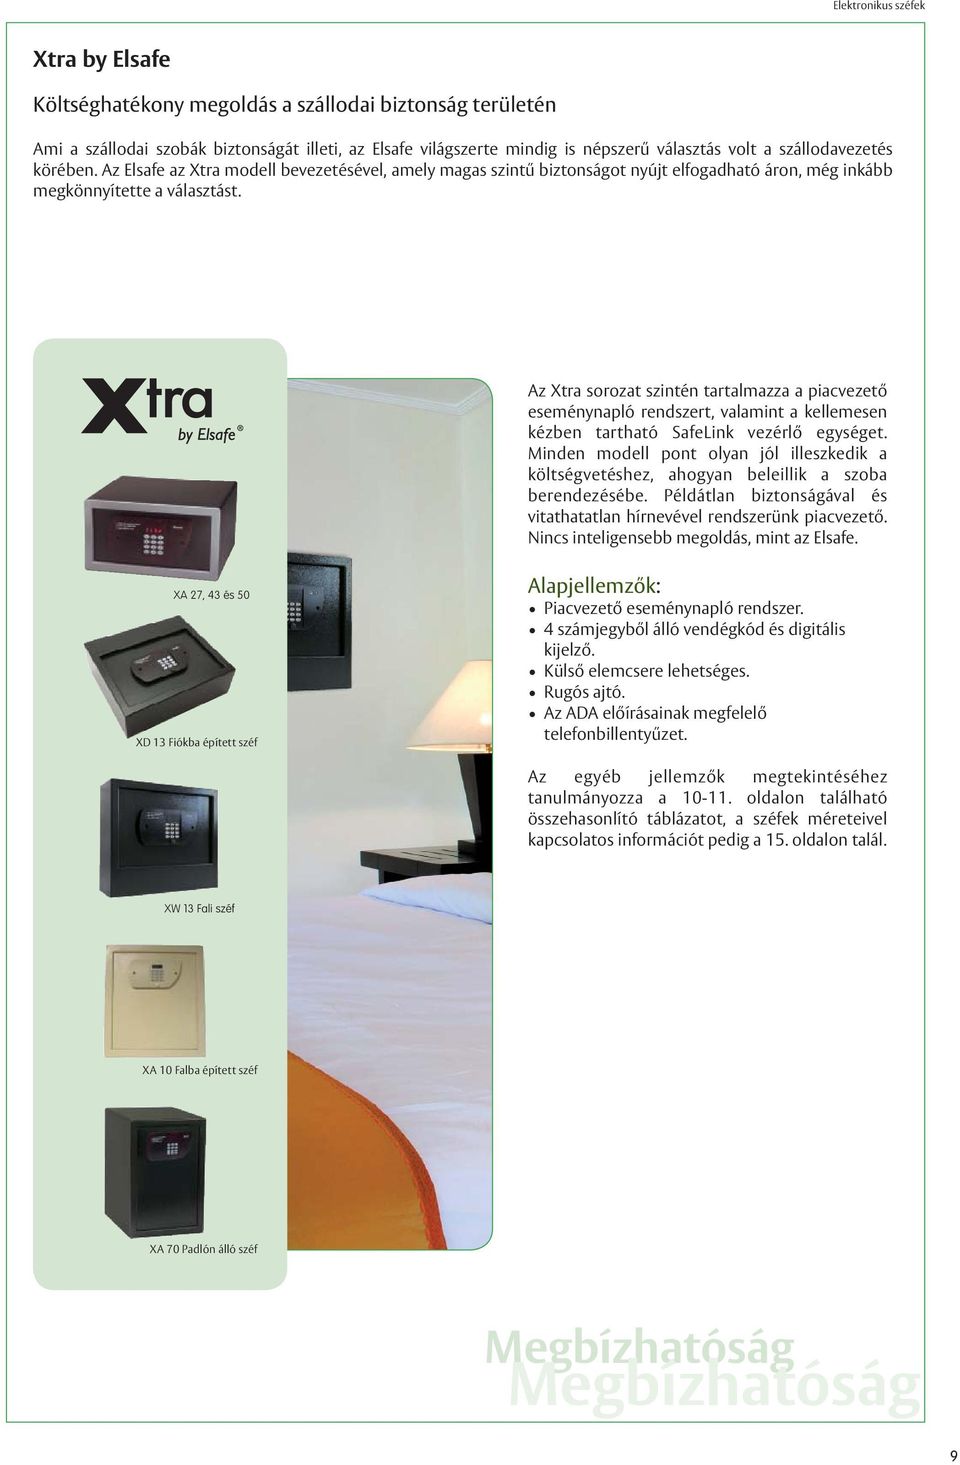 Az Xtra sorozat szintén tartalmazza a piacvezető eseménynapló rendszert, valamint a kellemesen kézben tartható SafeLink vezérlő egységet.